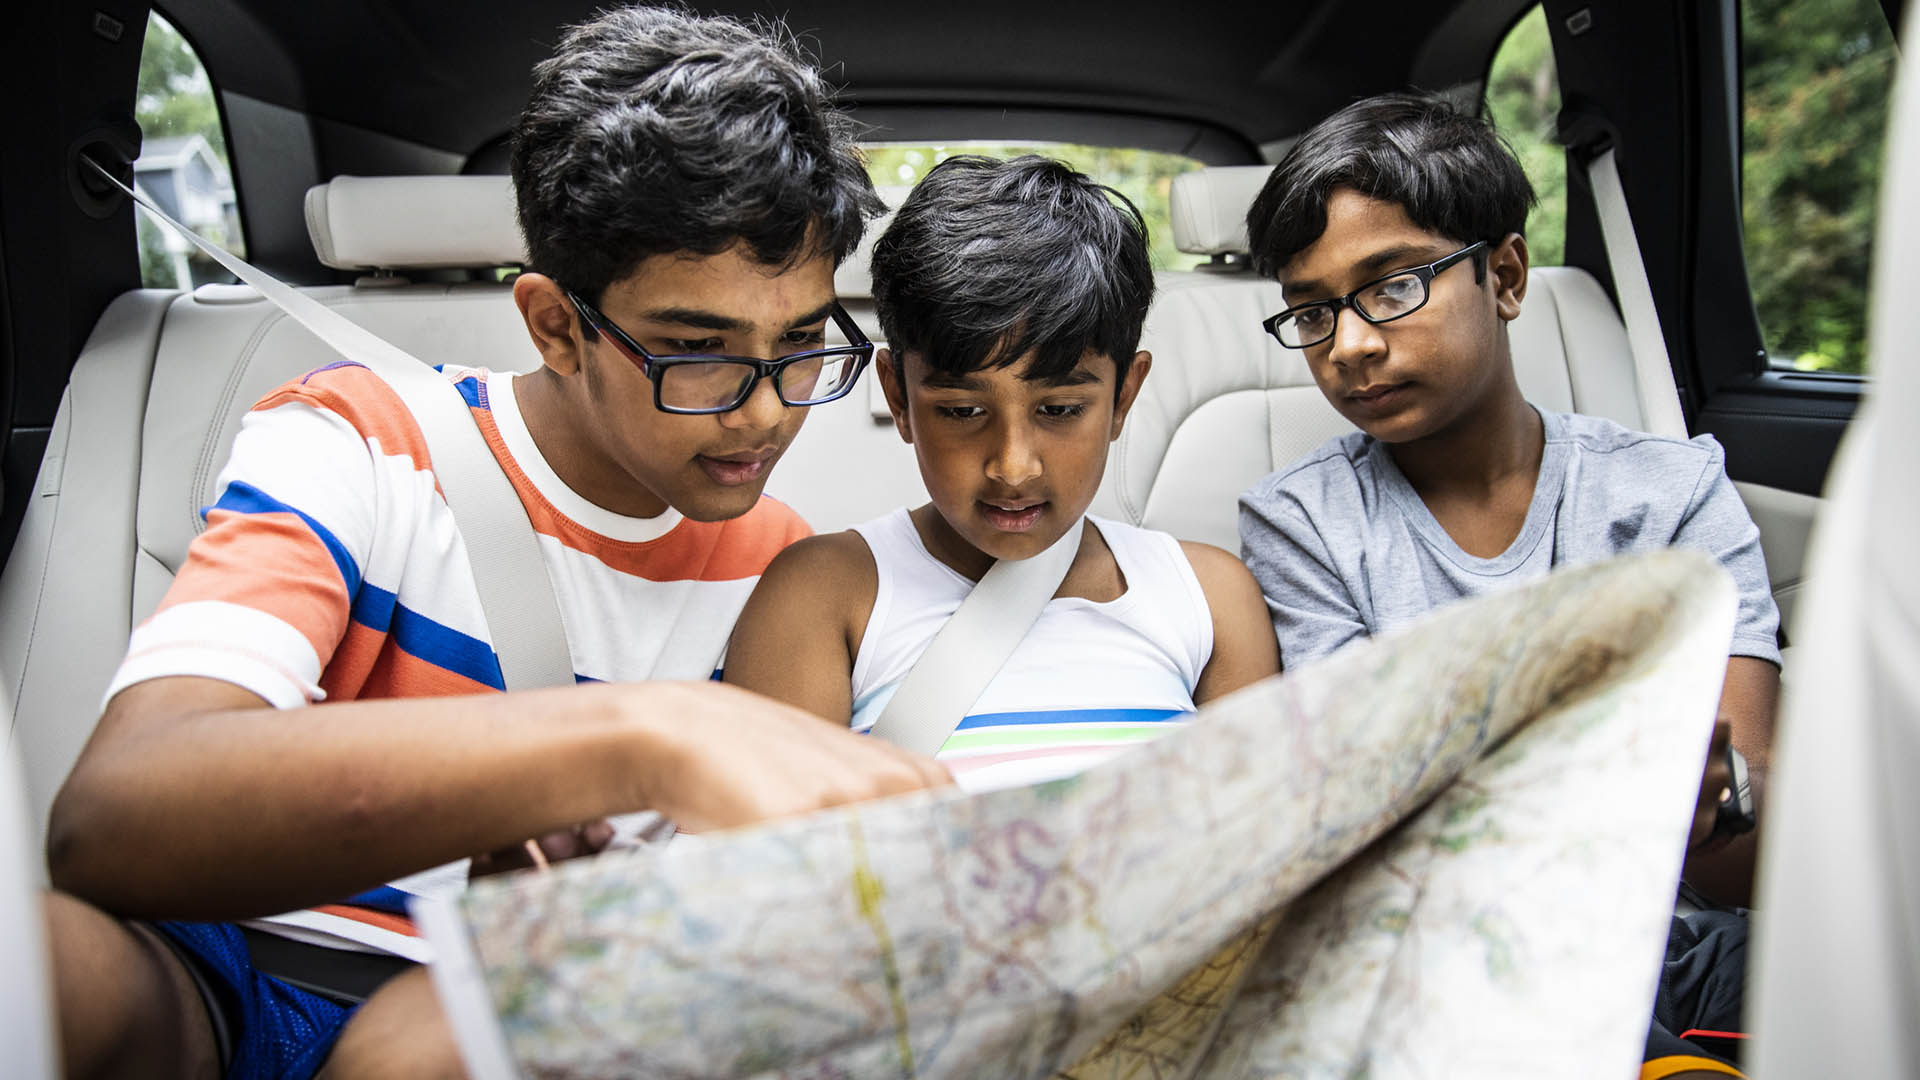 Si no se marean en movimiento, leer un mapa durante el viaje es un buen modo de entretener a los chicos si se quiere pausar el uso de electrónica a bordo / Getty